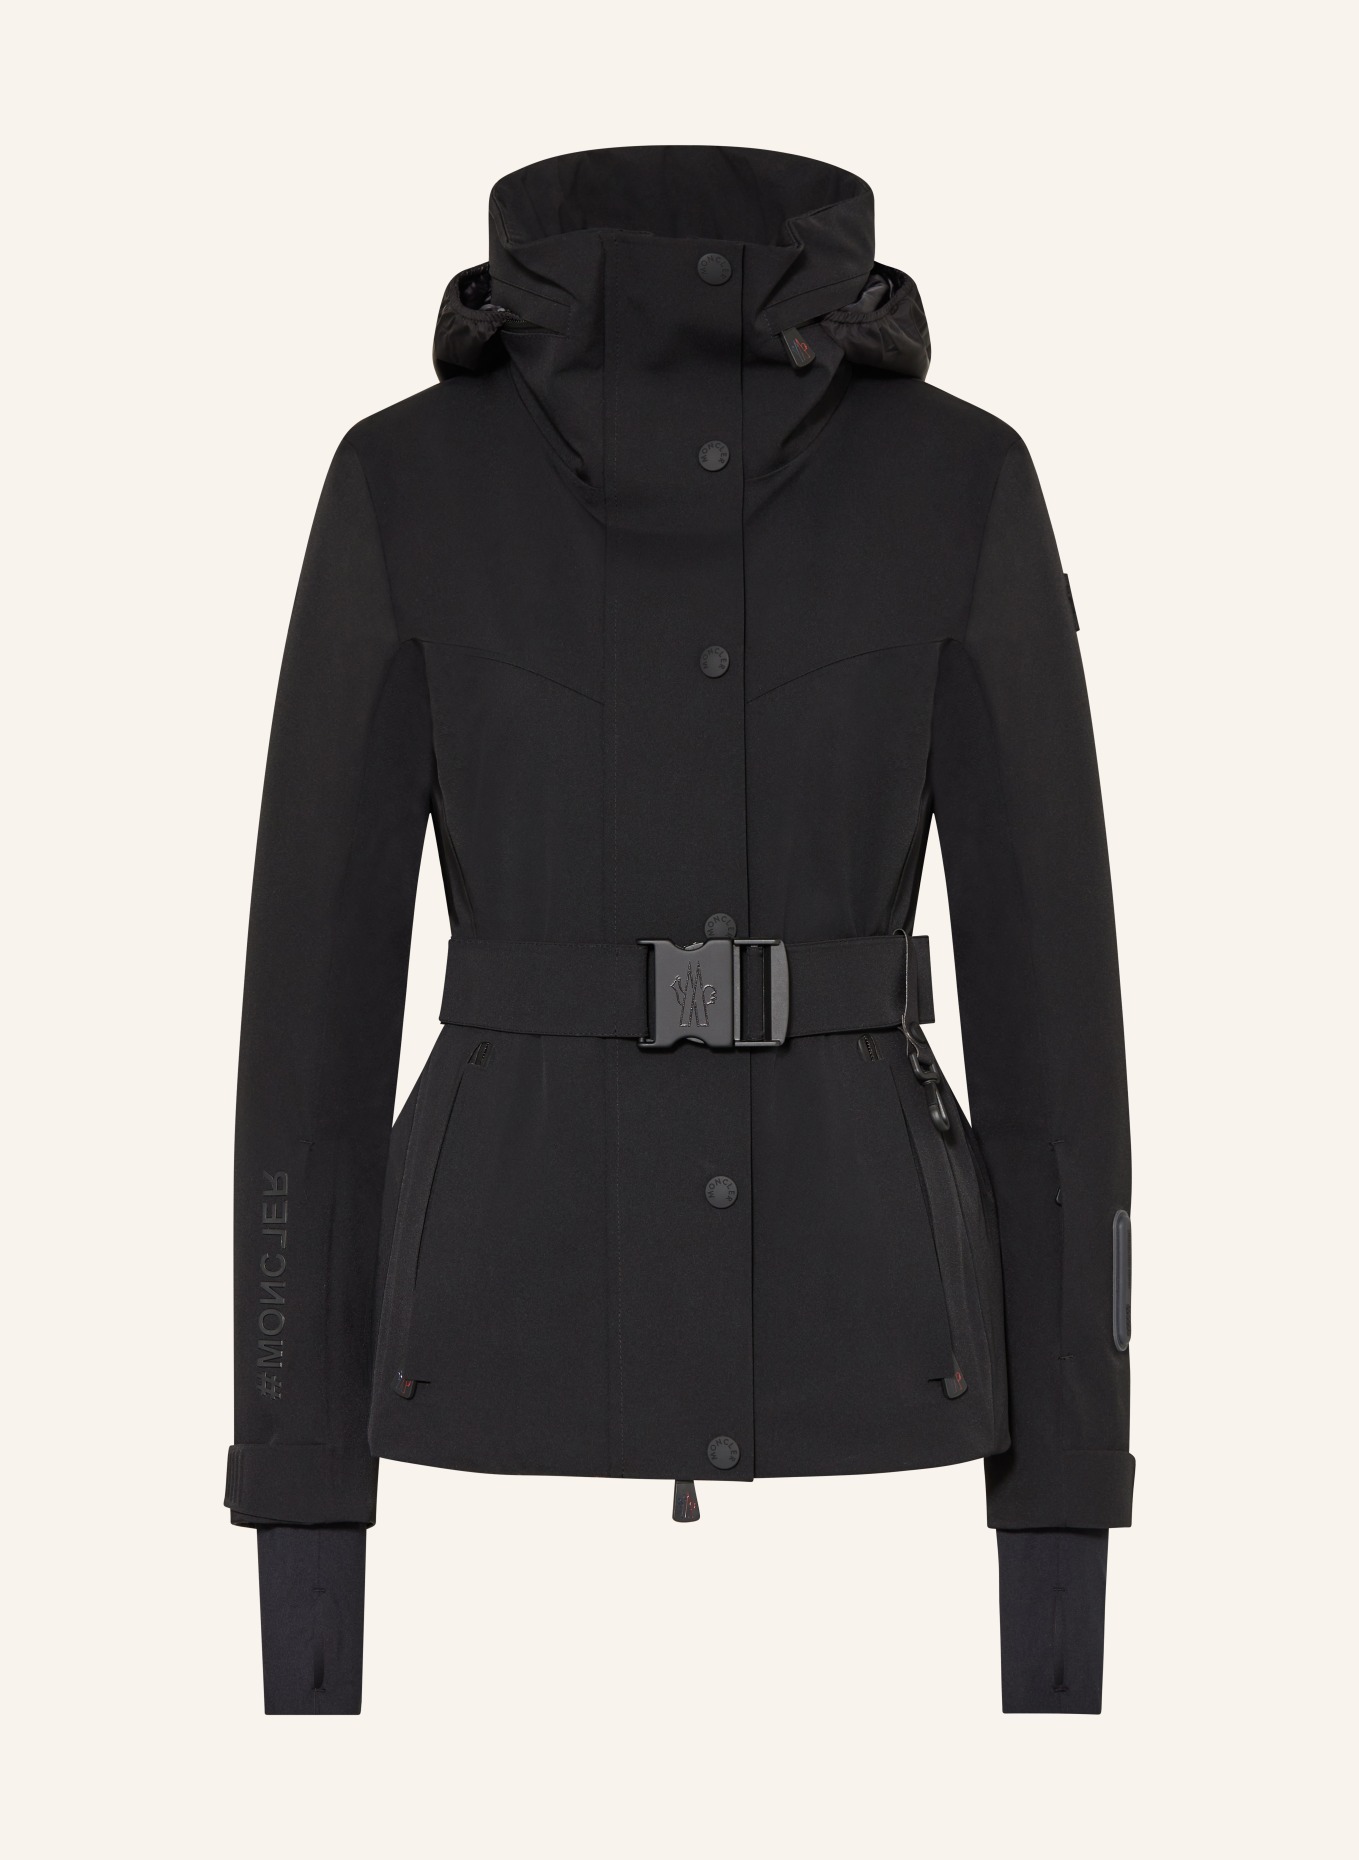 MONCLER GRENOBLE Ski jacket HAINET, Color: BLACK (Image 1)